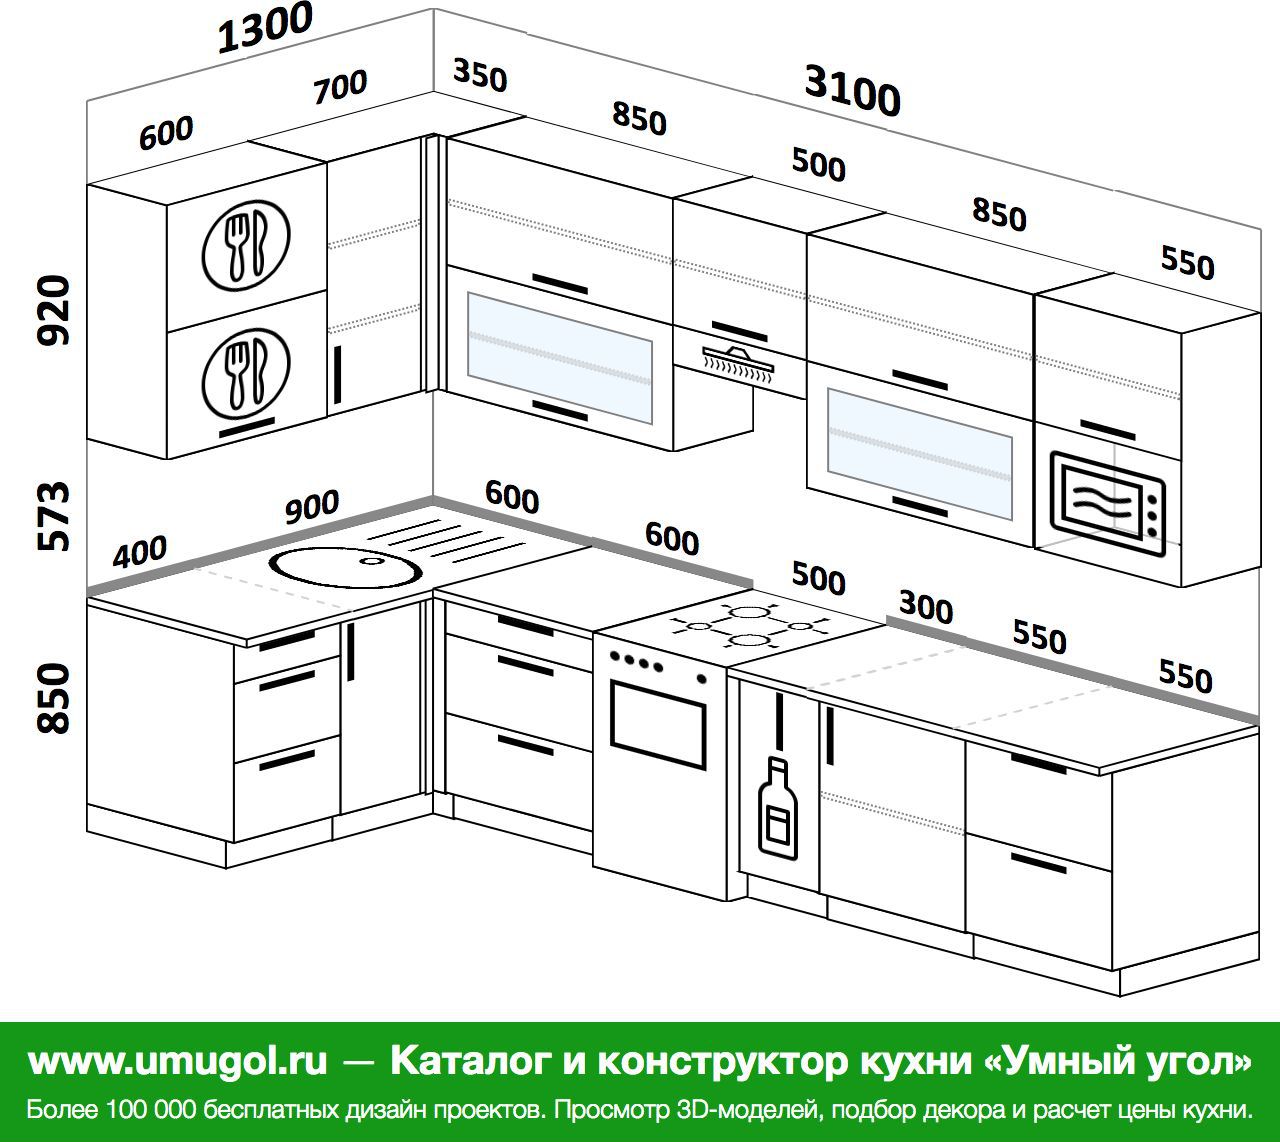 Кухня 1300см. Кухня 2900 на 1300. Схема кухни угловой с размерами и размещением. Кухня 300 см.